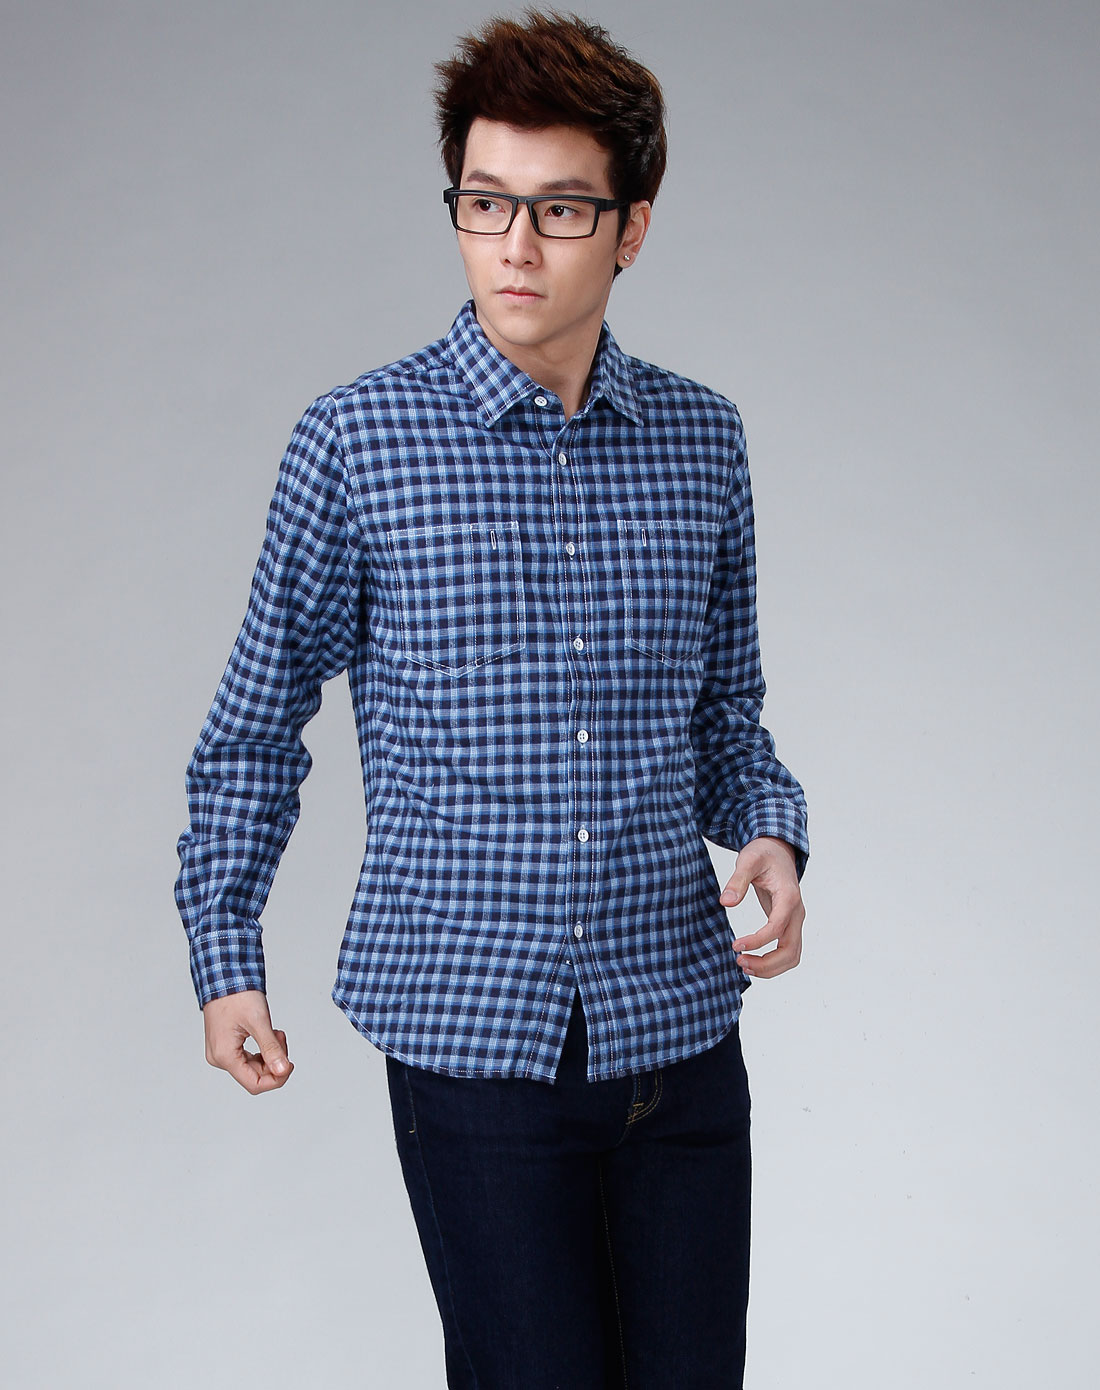 MICHAEL KORS 中国官方在线精品店 - 休闲棉质格子衬衫